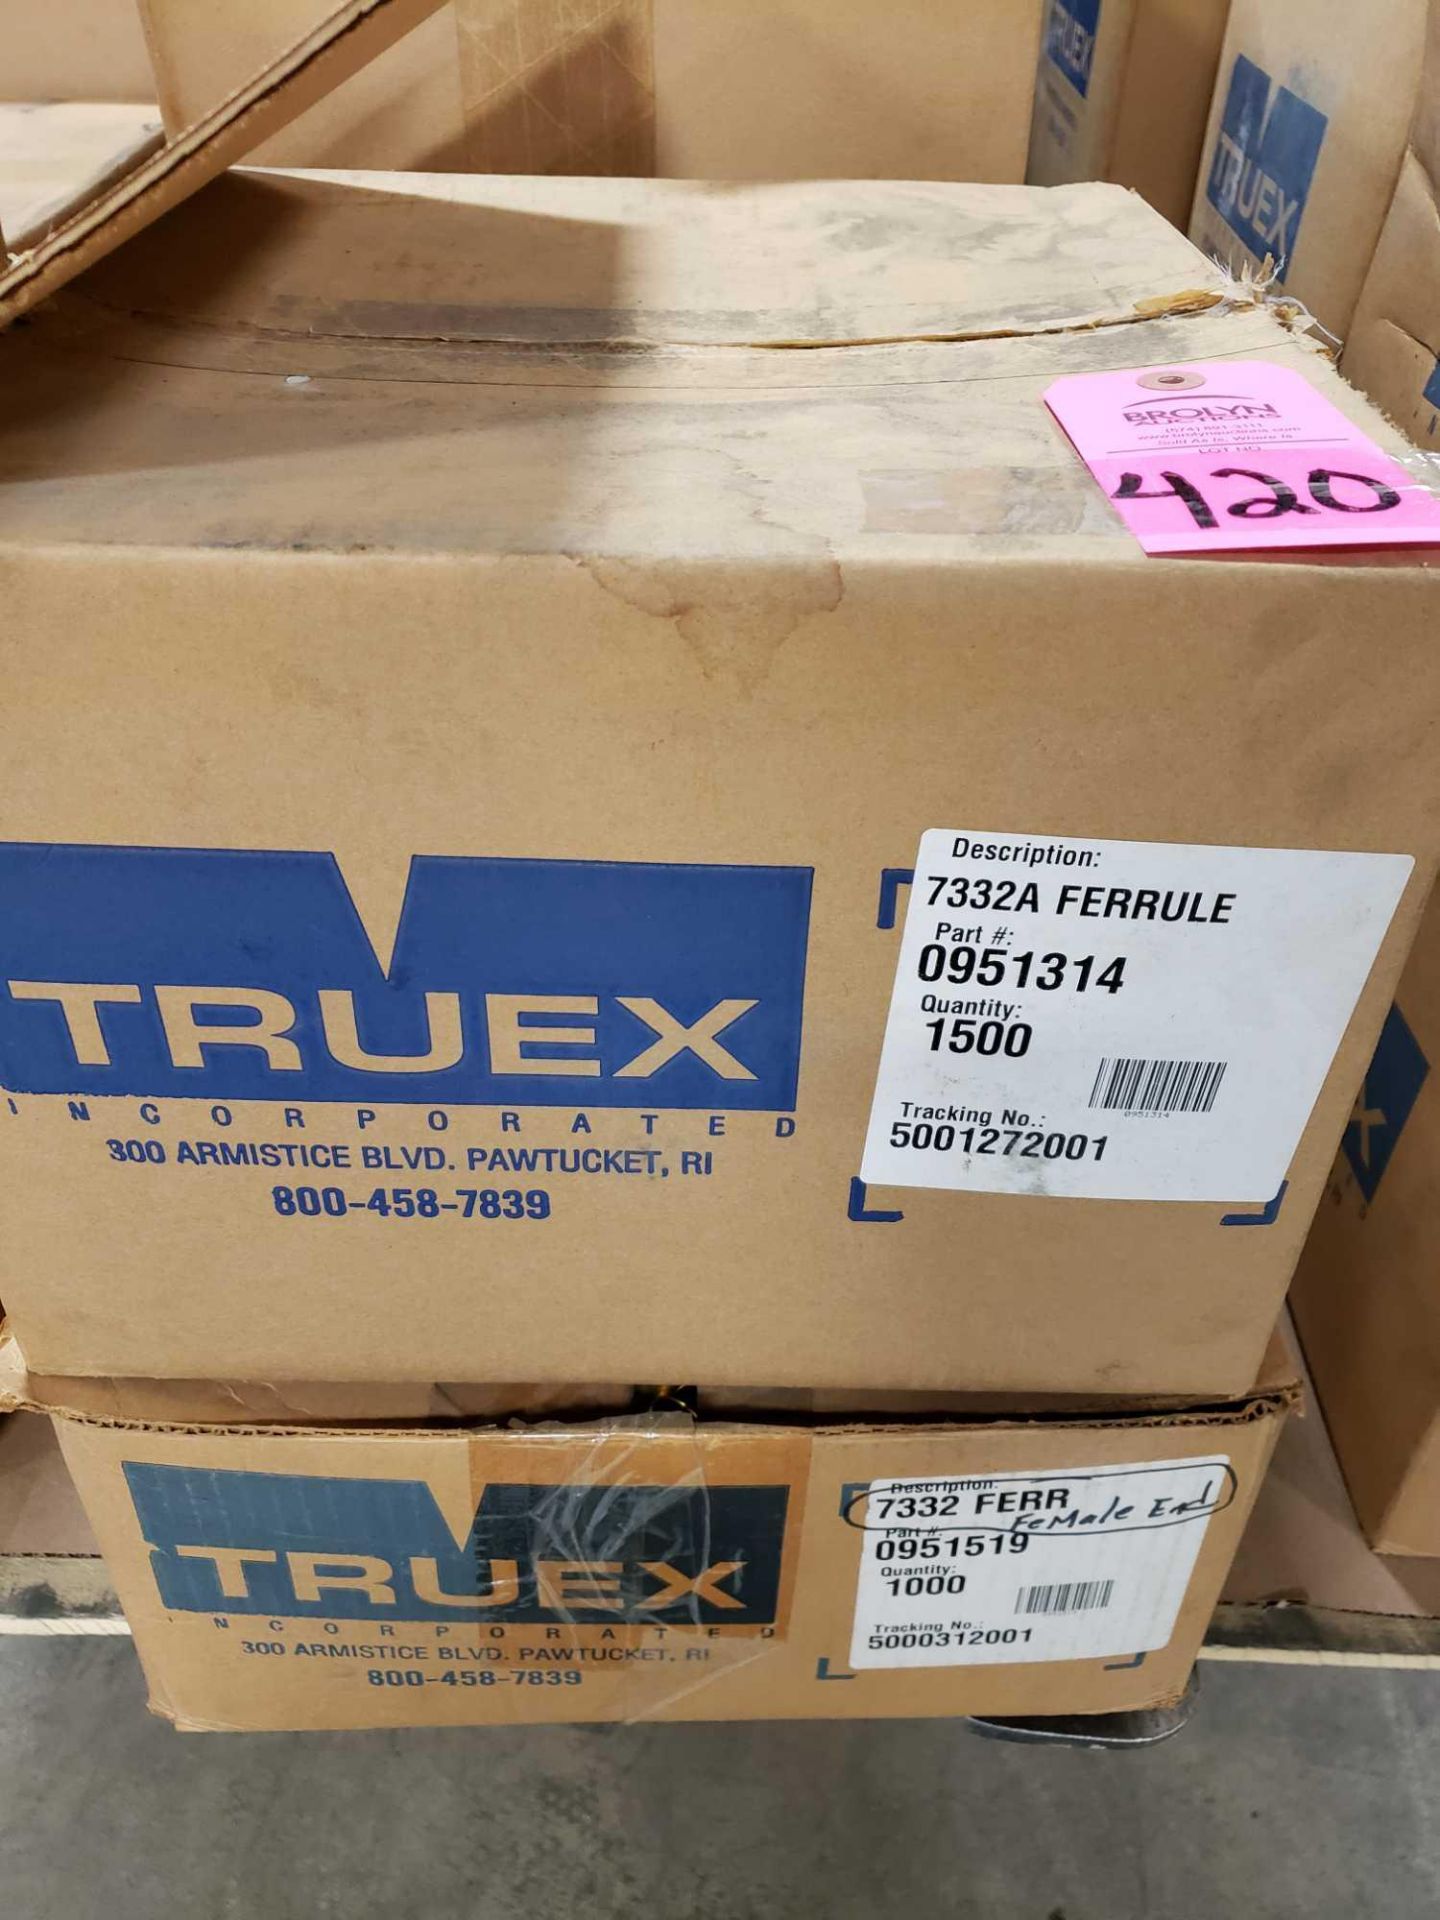 Qty 3000 - Truex ferrule model 7332A, part number 0951314. New in bulk box.